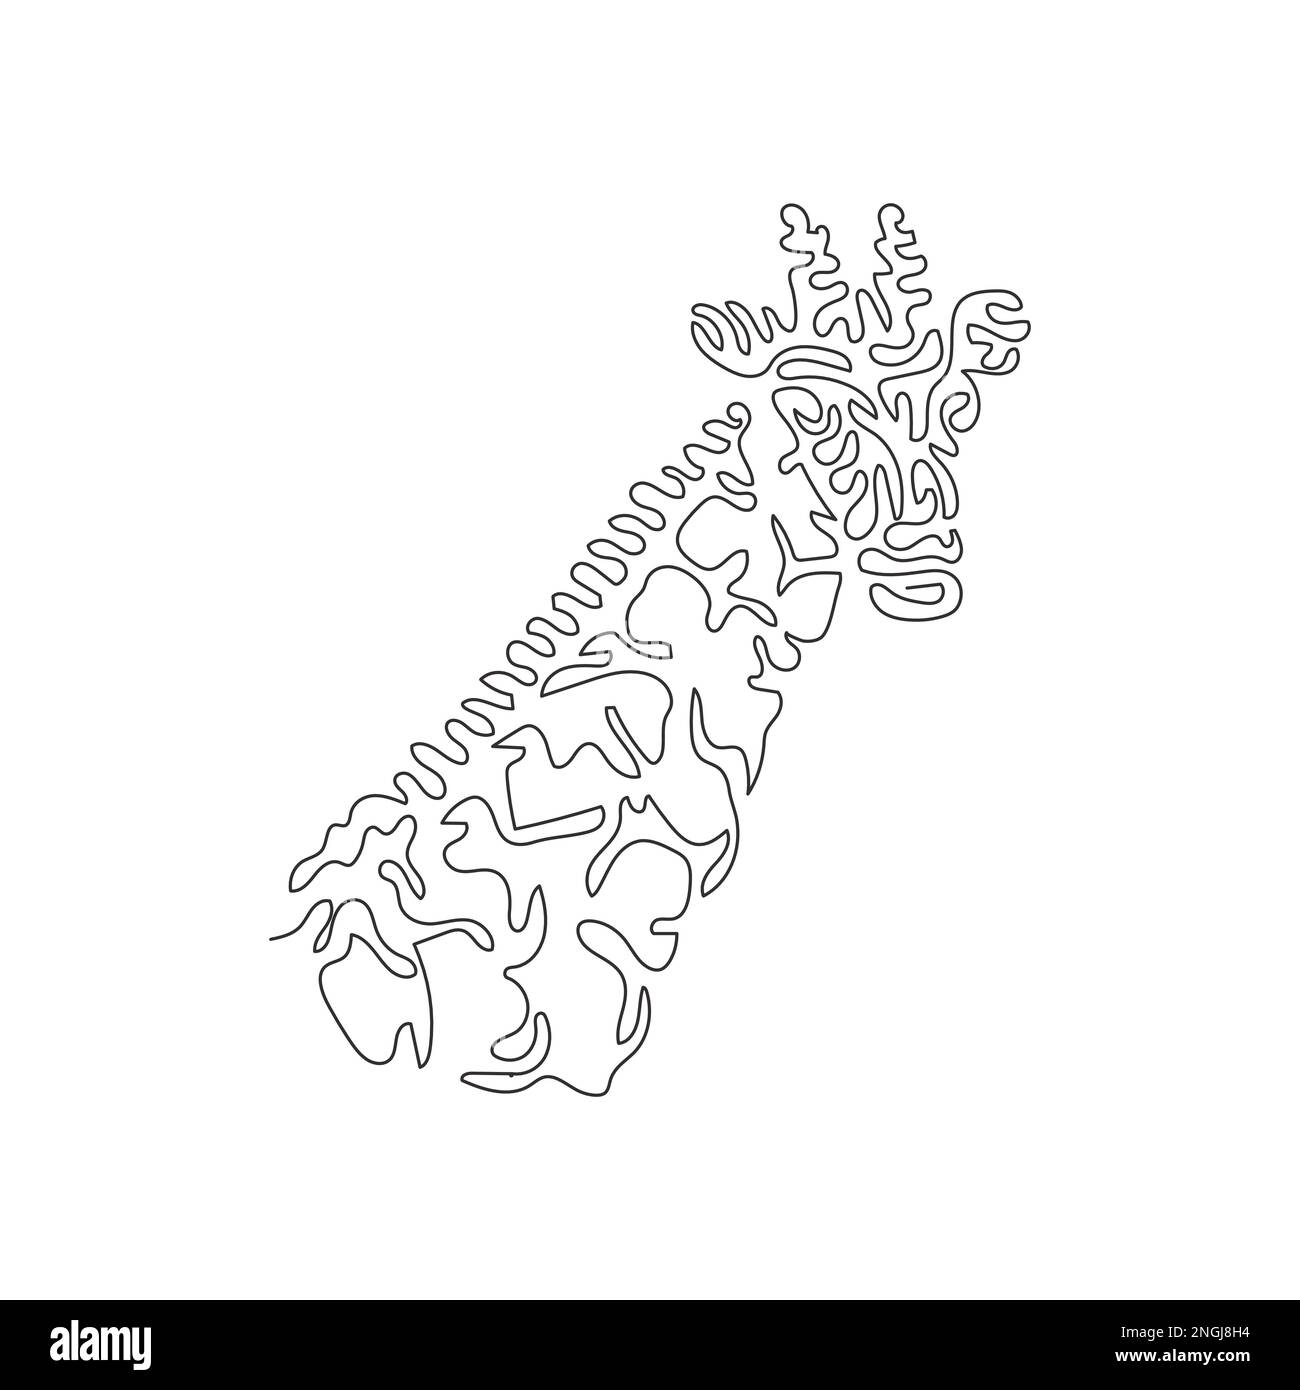 Eine einzelne geschweifte eine Linie zeichnen abstrakte Kunst. Giraffe langhalsiger Säugetiere. Durchgehende Linienzeichnung, Vektordarstellung einer bezaubernden Giraffe Stock Vektor